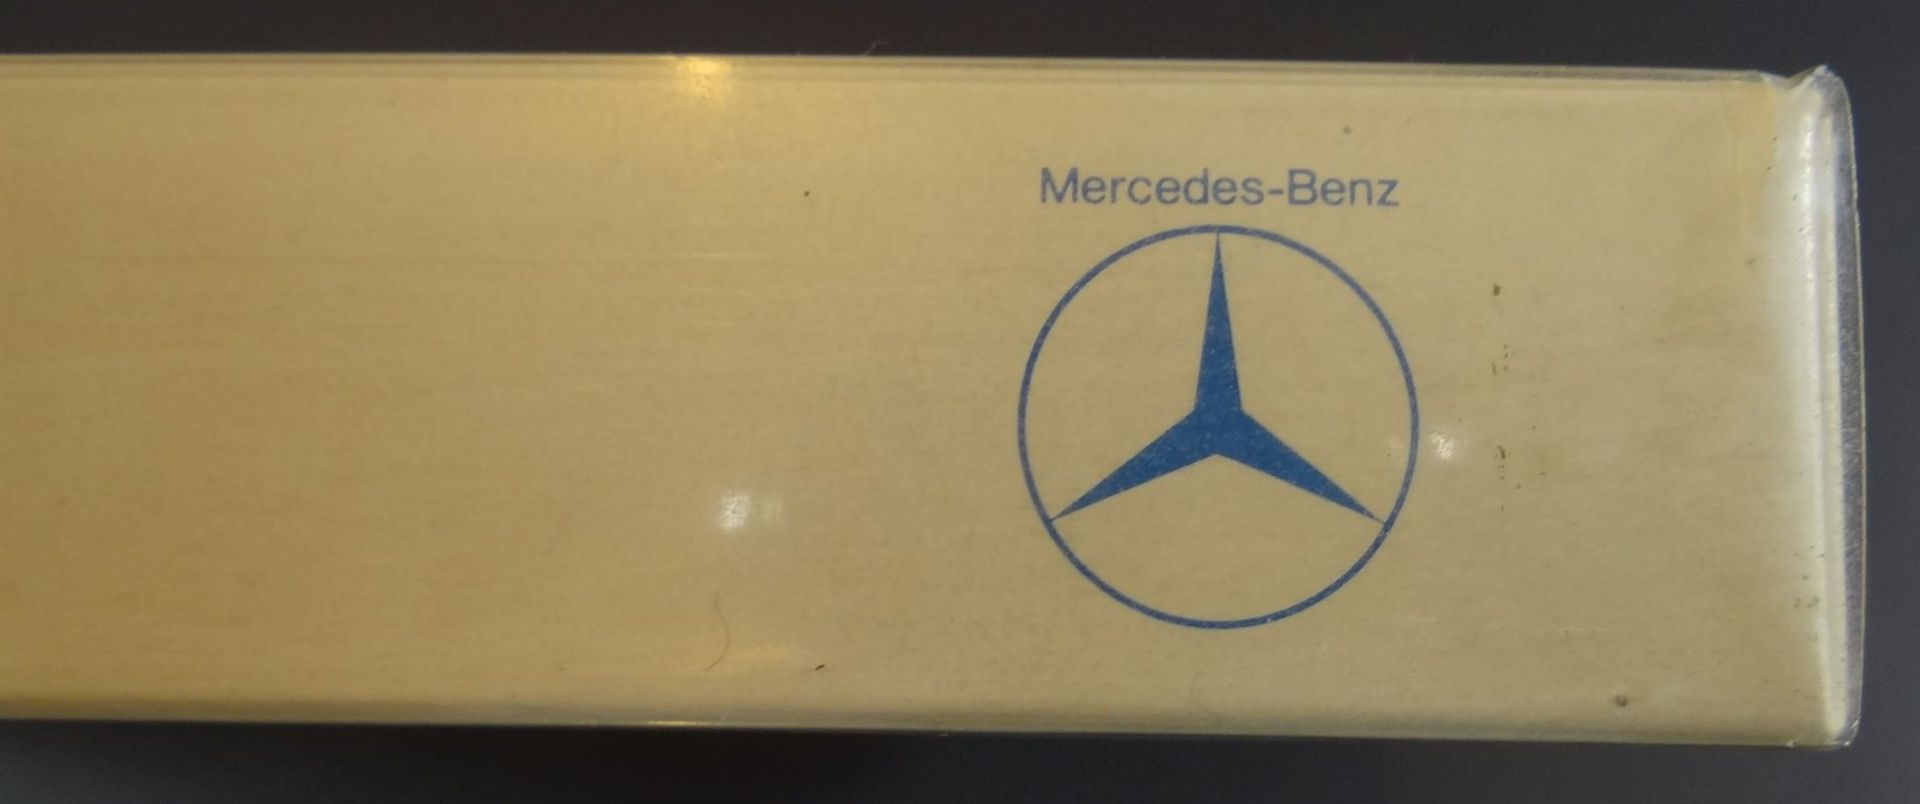 6x Automodelle "Wiking" Mercedes-Benz in Display, um 1980, Kunststoff - Bild 2 aus 11